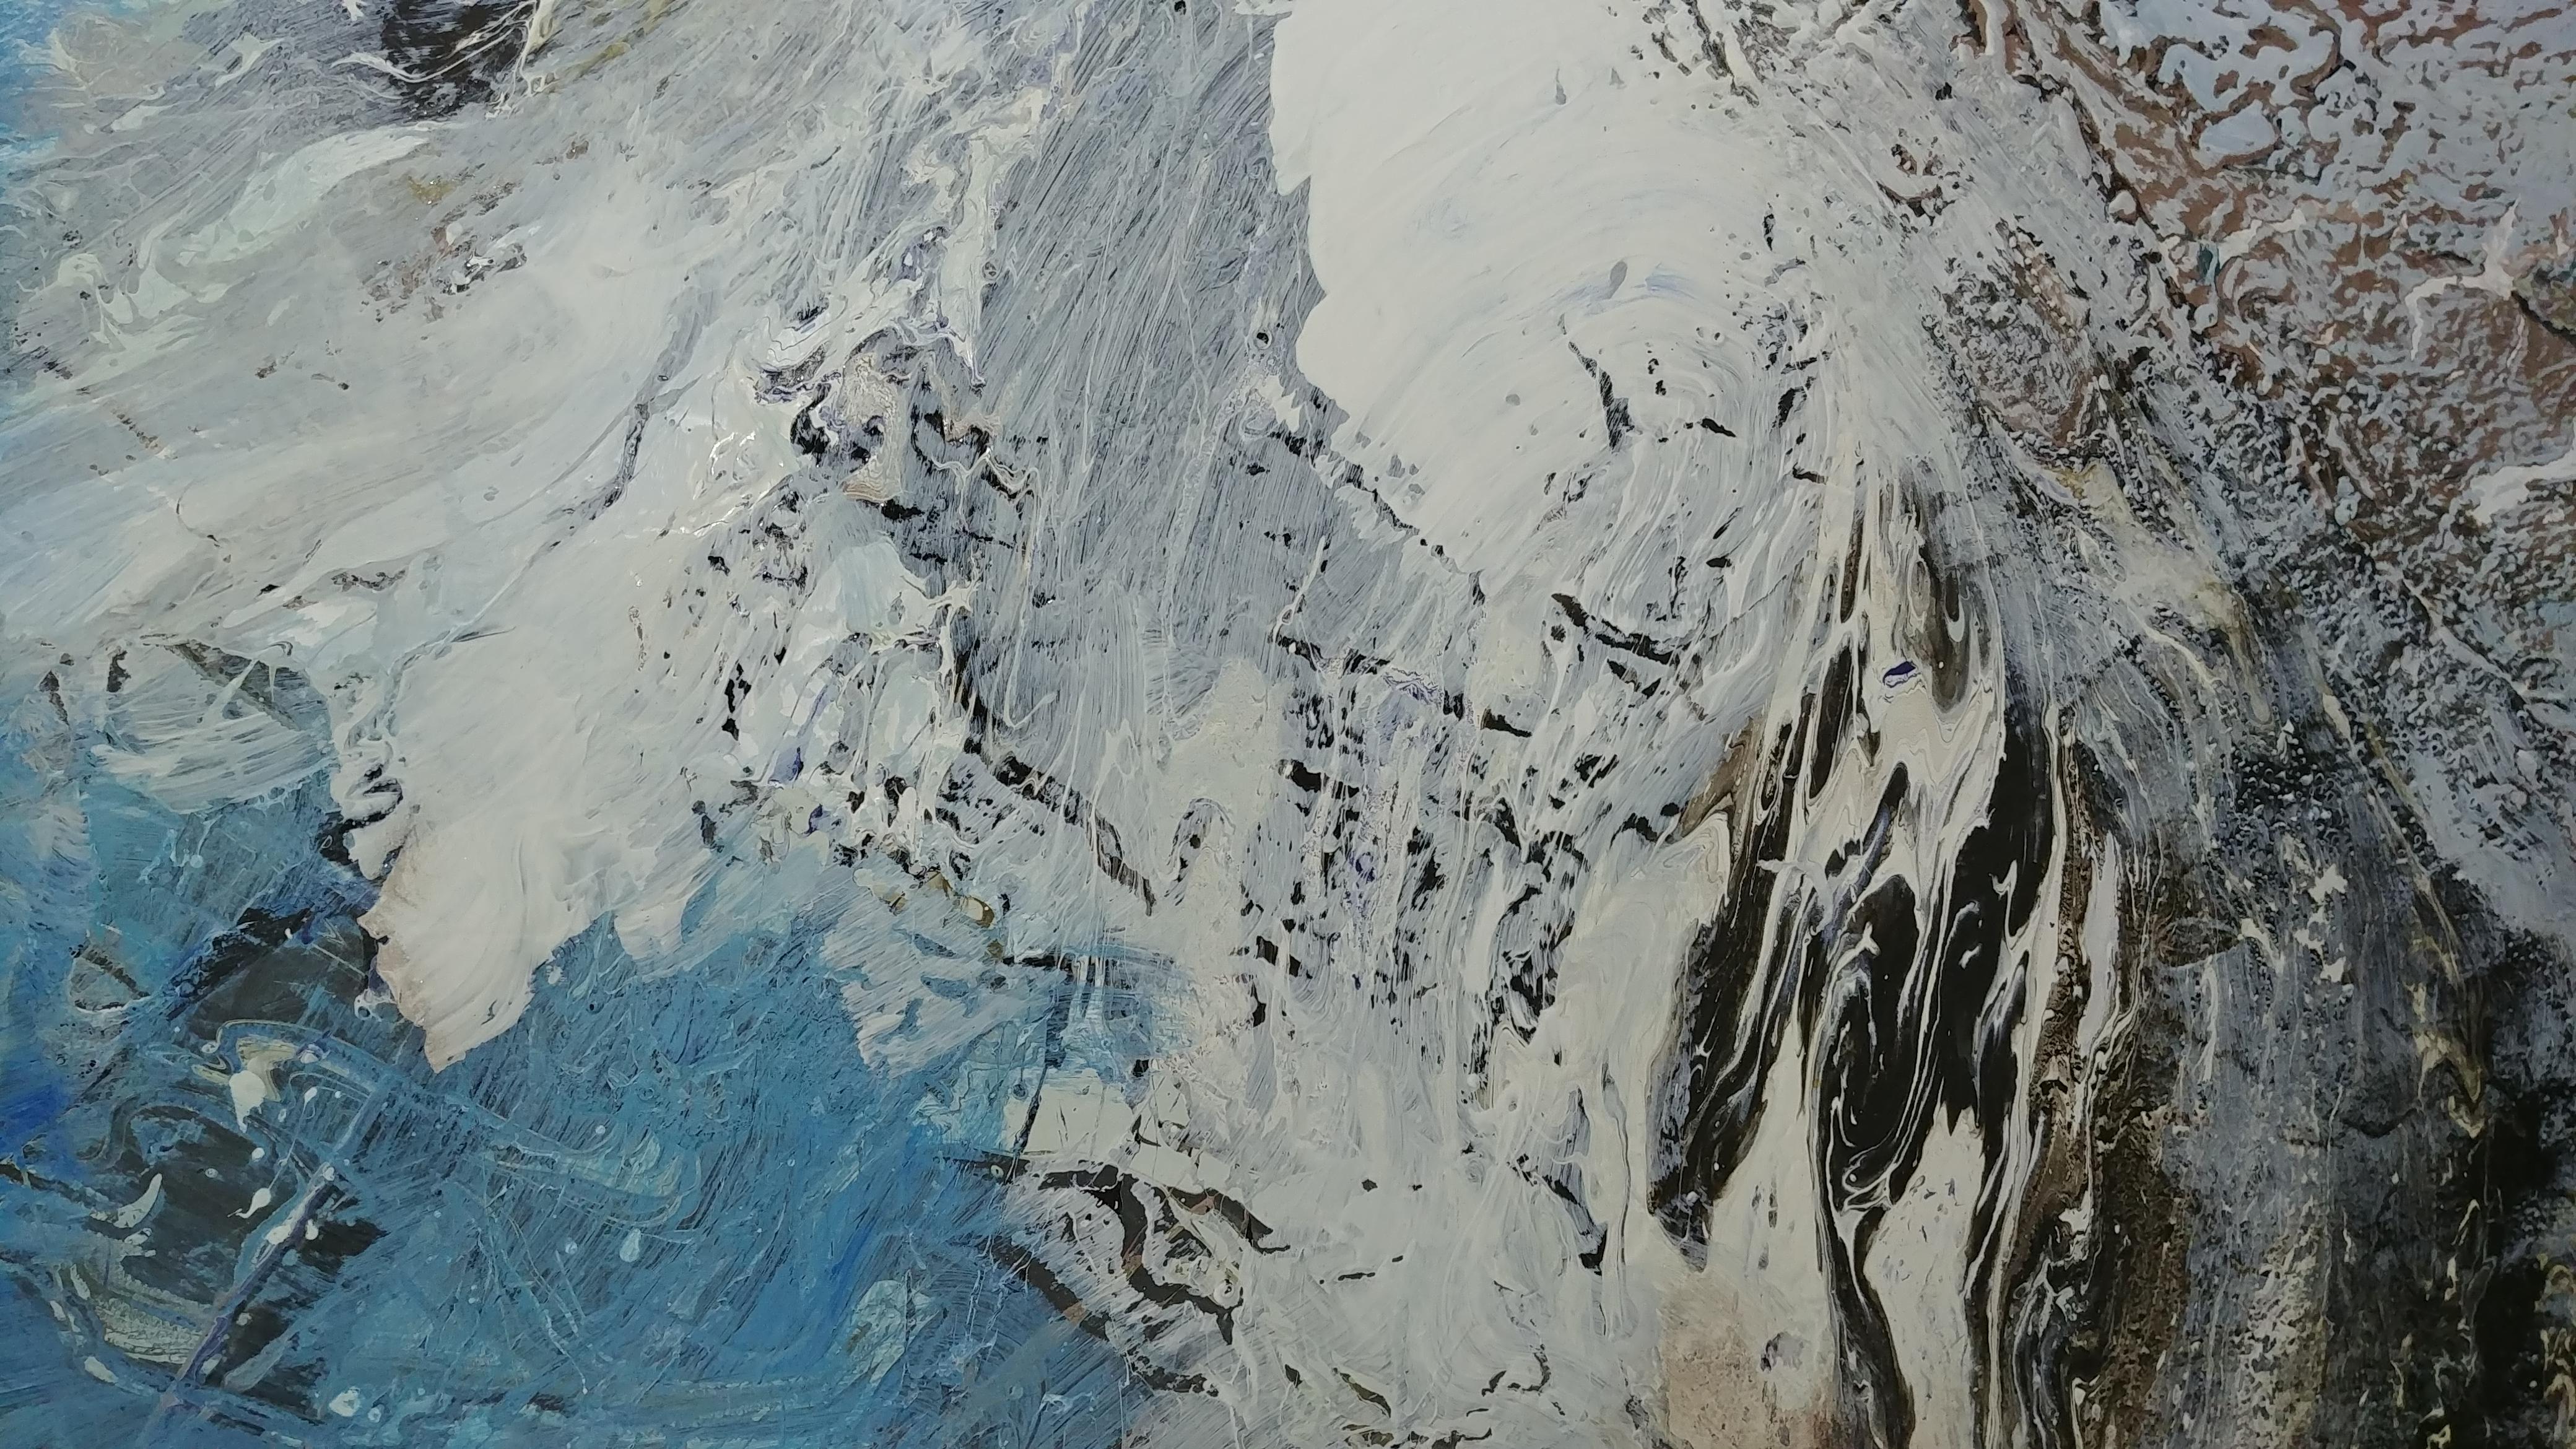 Peace & Power- éclats de blanc sur bleu 48 x 60
acrylique, techniques mixtes  sur toile

Nancy Seibert a commencé ses études d'art à Washington D.C., à l'université George Washington. Elle est diplômée de la Kent State University, où elle a obtenu